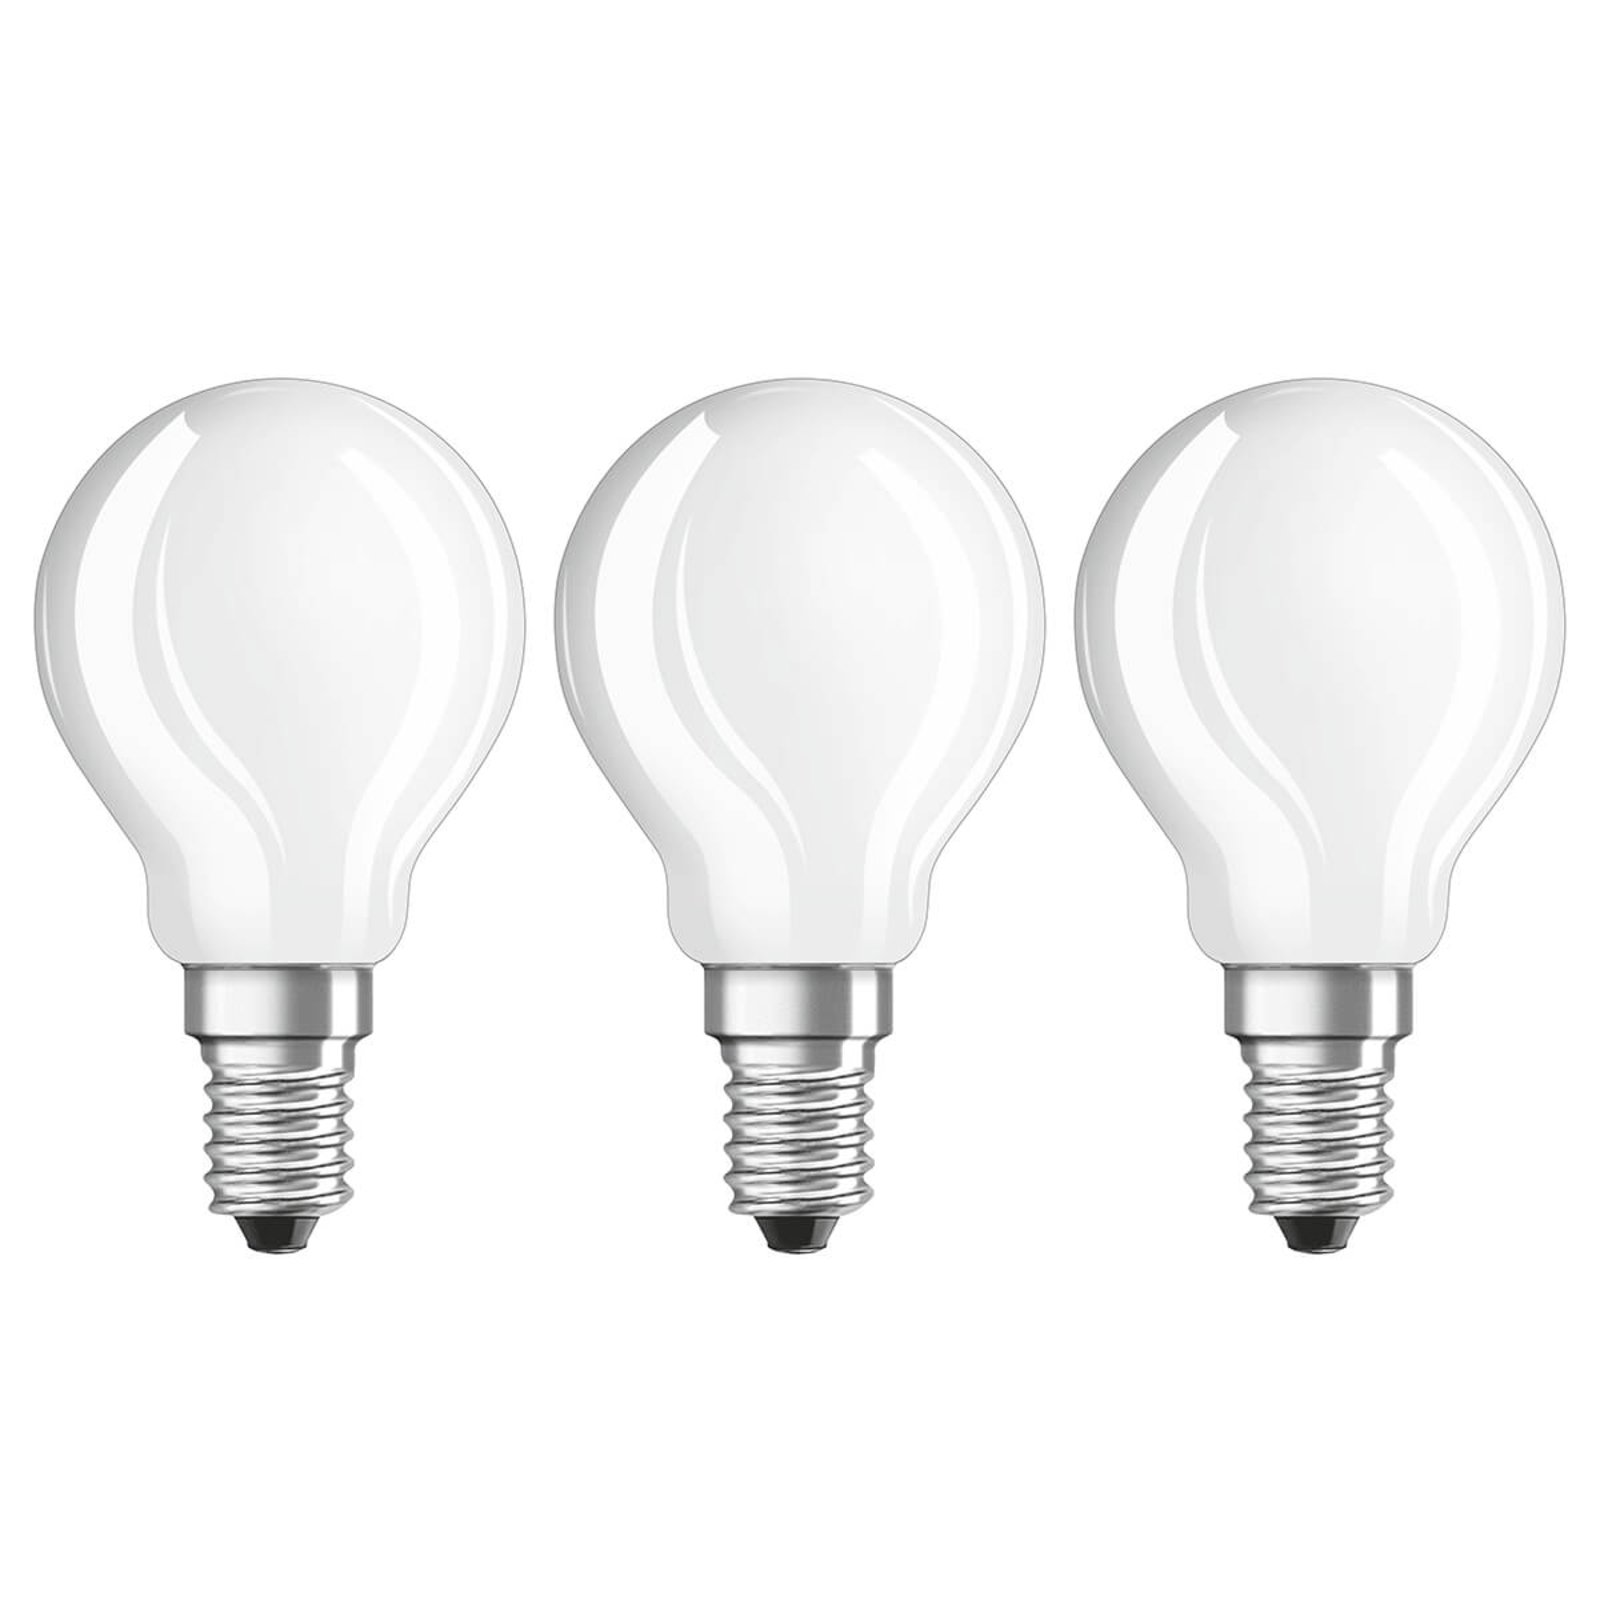 acre Voorspellen Onbelangrijk LED lamp E14 4W, warmwit, 470 lumen, set van 3 | Lampen24.nl